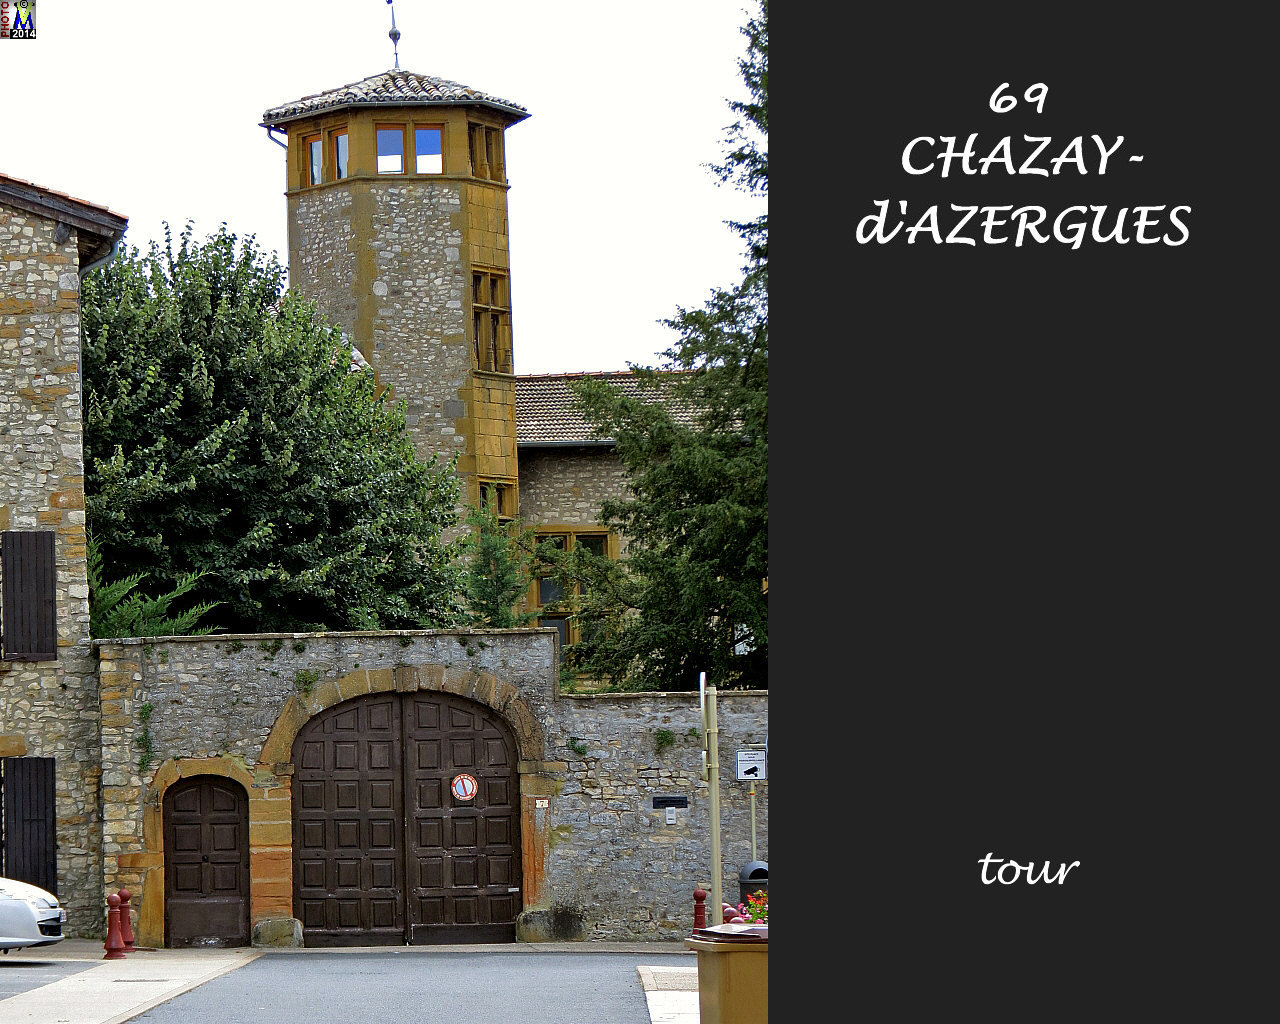 69CHAZAY-AZERGUES_tour_120.jpg